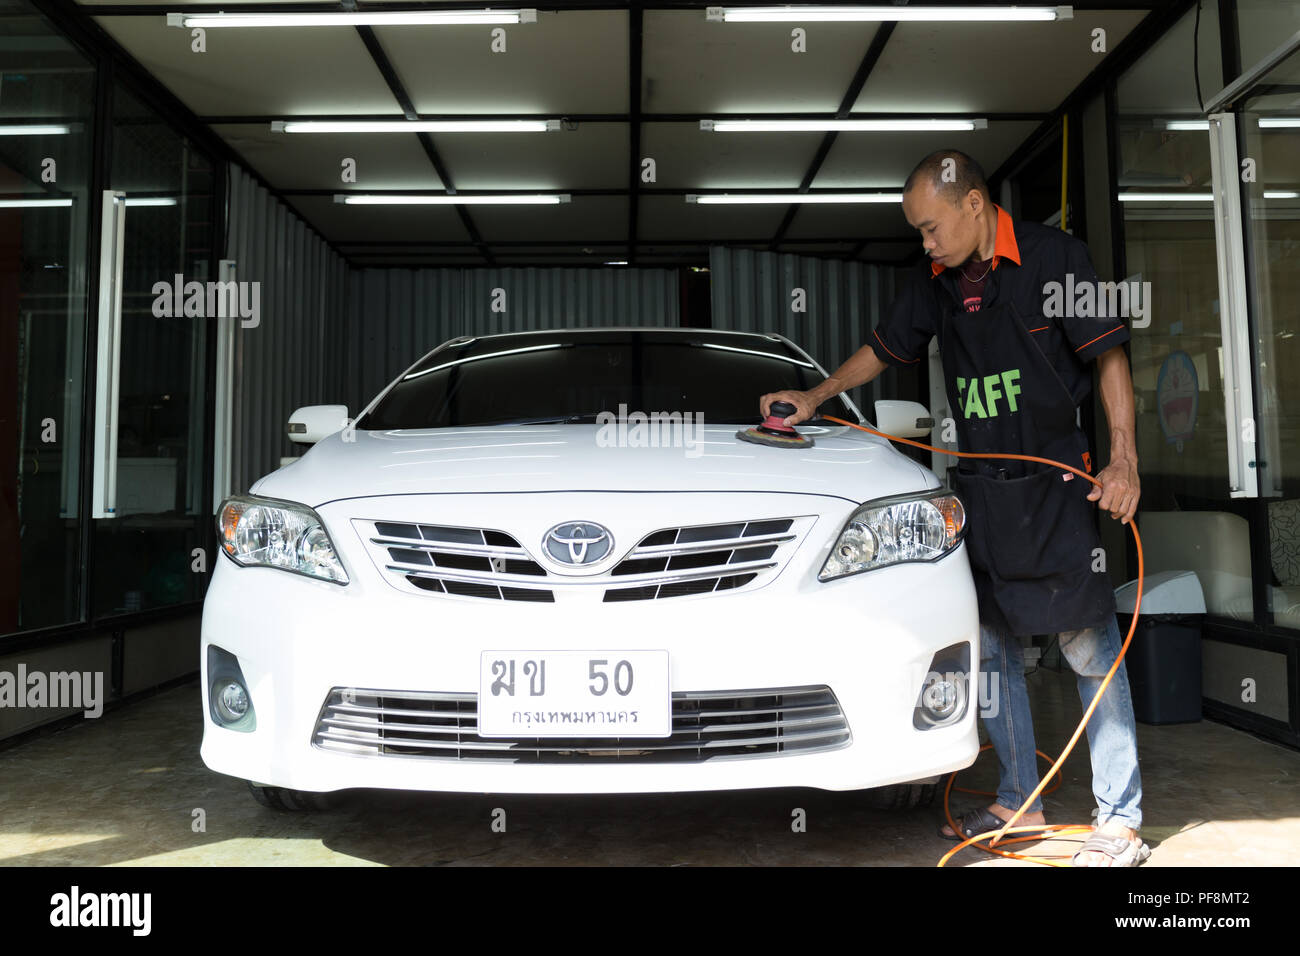 Jan, 28, 60 - in corrispondenza di Nong autolavaggi, Bangkok in Thailandia - Il logo Toyota su una vettura , personale operaio lucidatura a mano per il lavaggio di auto in car wash. Foto Stock